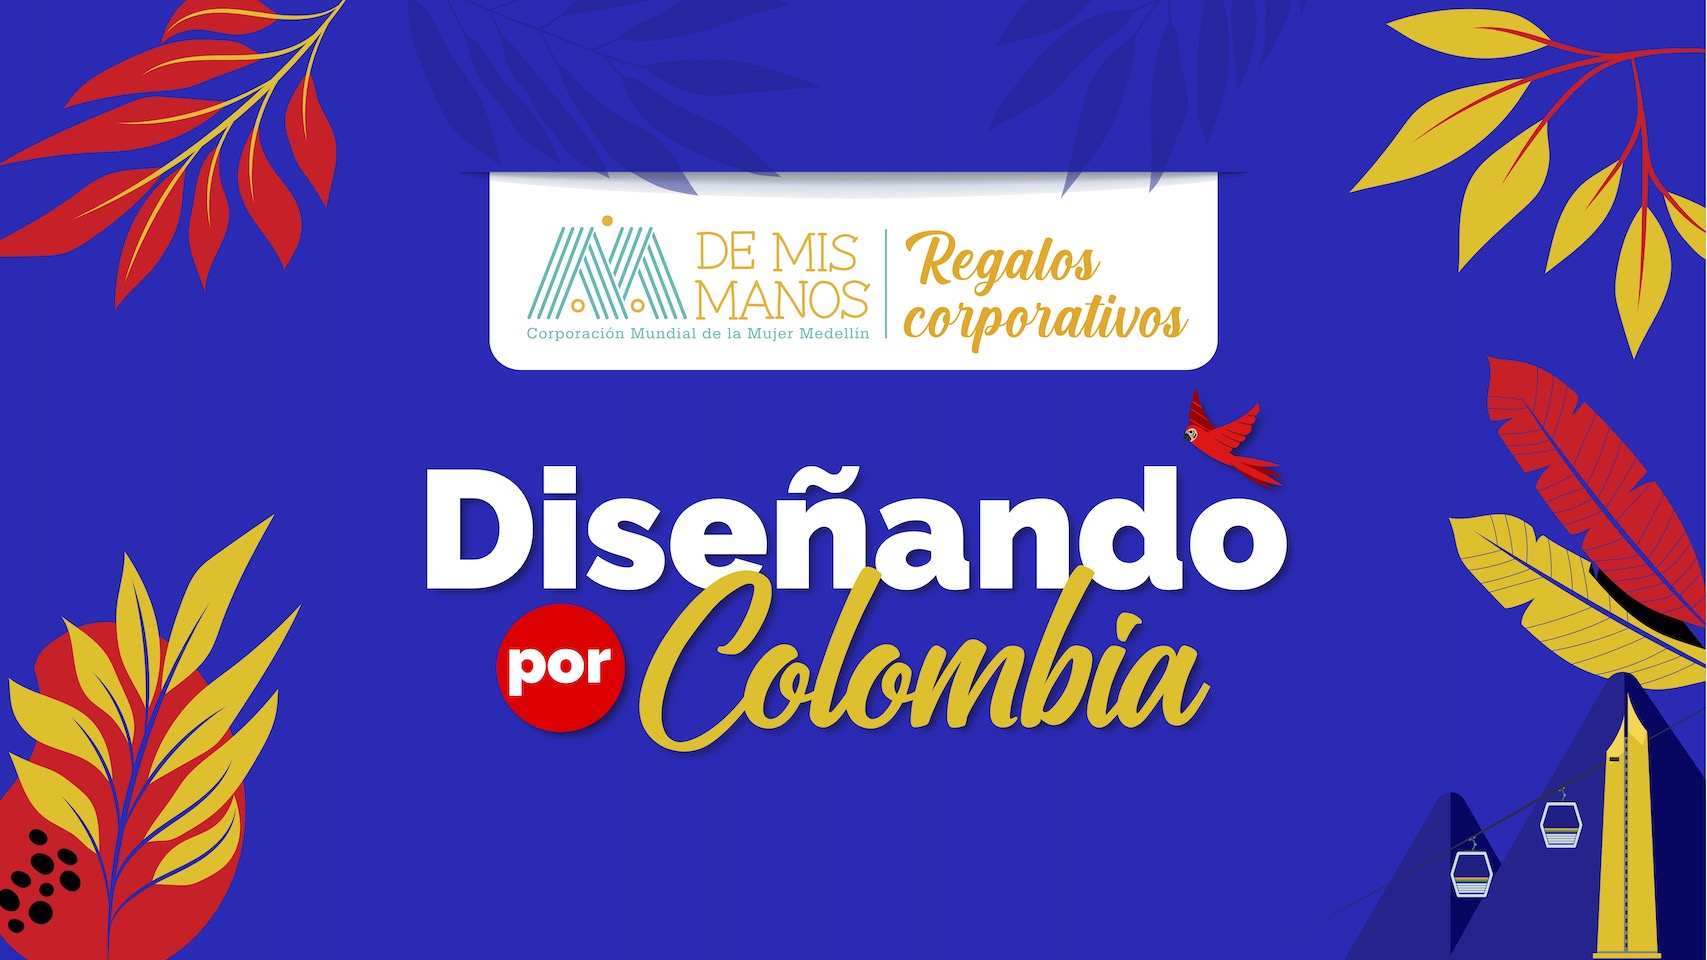 Diseñando Colombiano